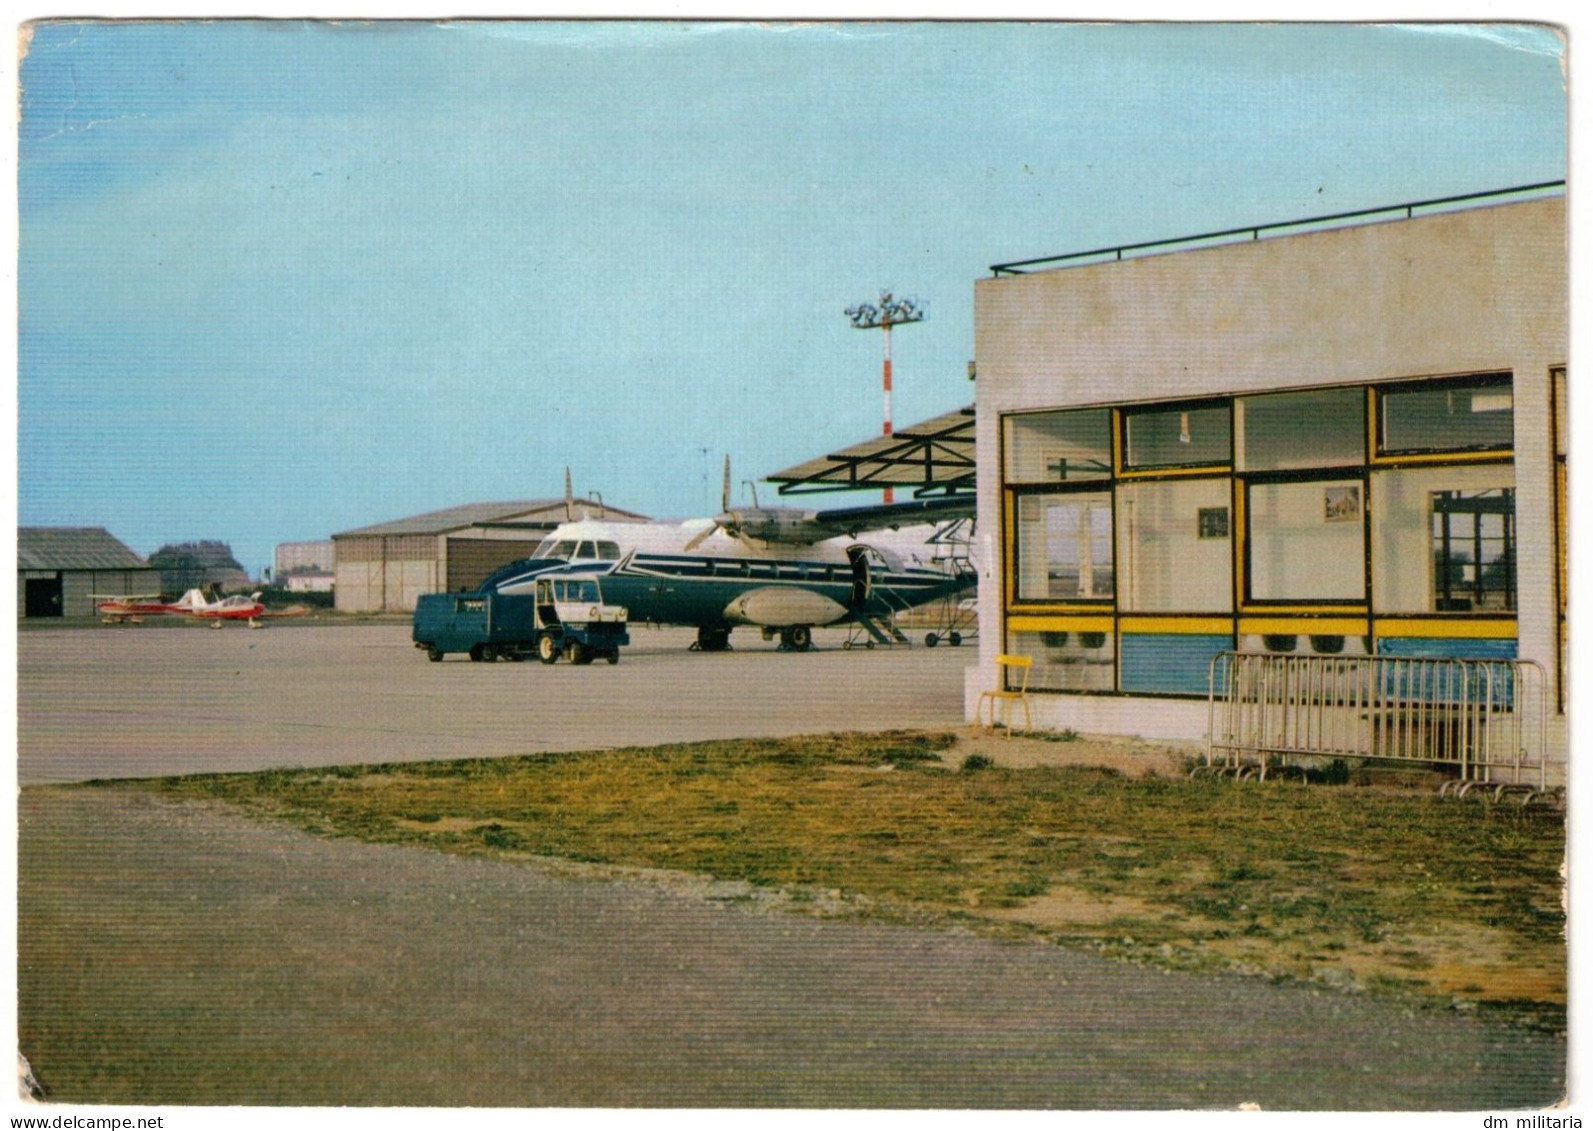 57 - METZ - L'AÉROPORT - E Ci. 6 - AVION EN ATTENTE SUR LE TARMAC - MARLY FRESCATY - MOSELLE - Aérodromes